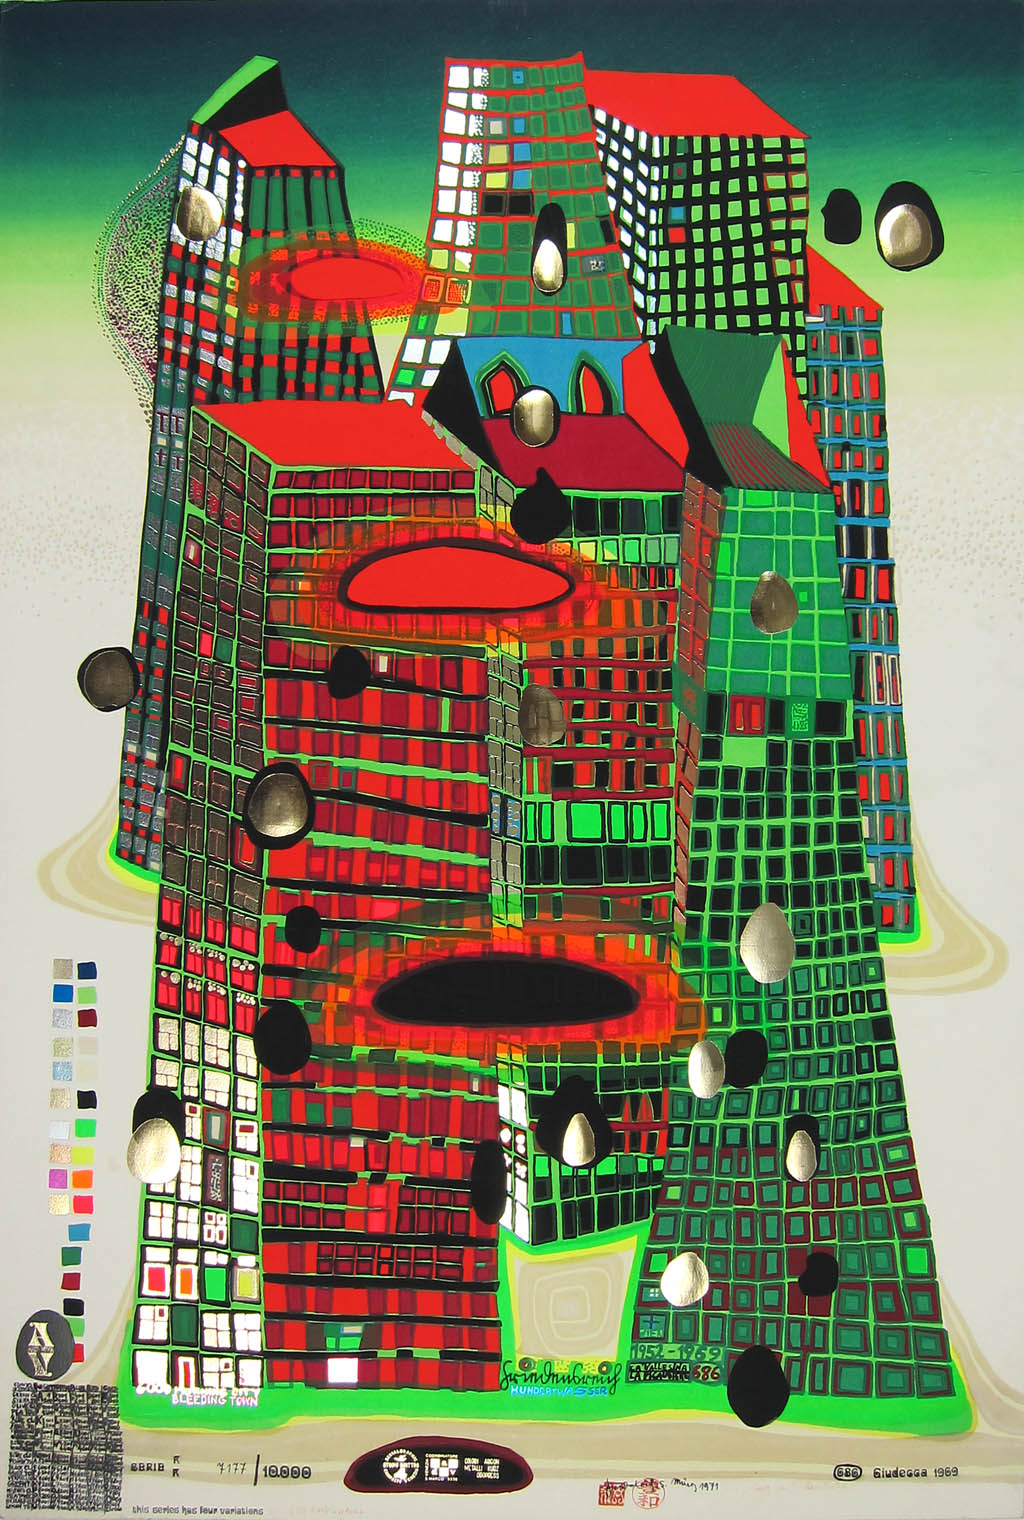 Hundertwasser - Good Morning City - Bleeding Town - series KK - 1969 color screenprint